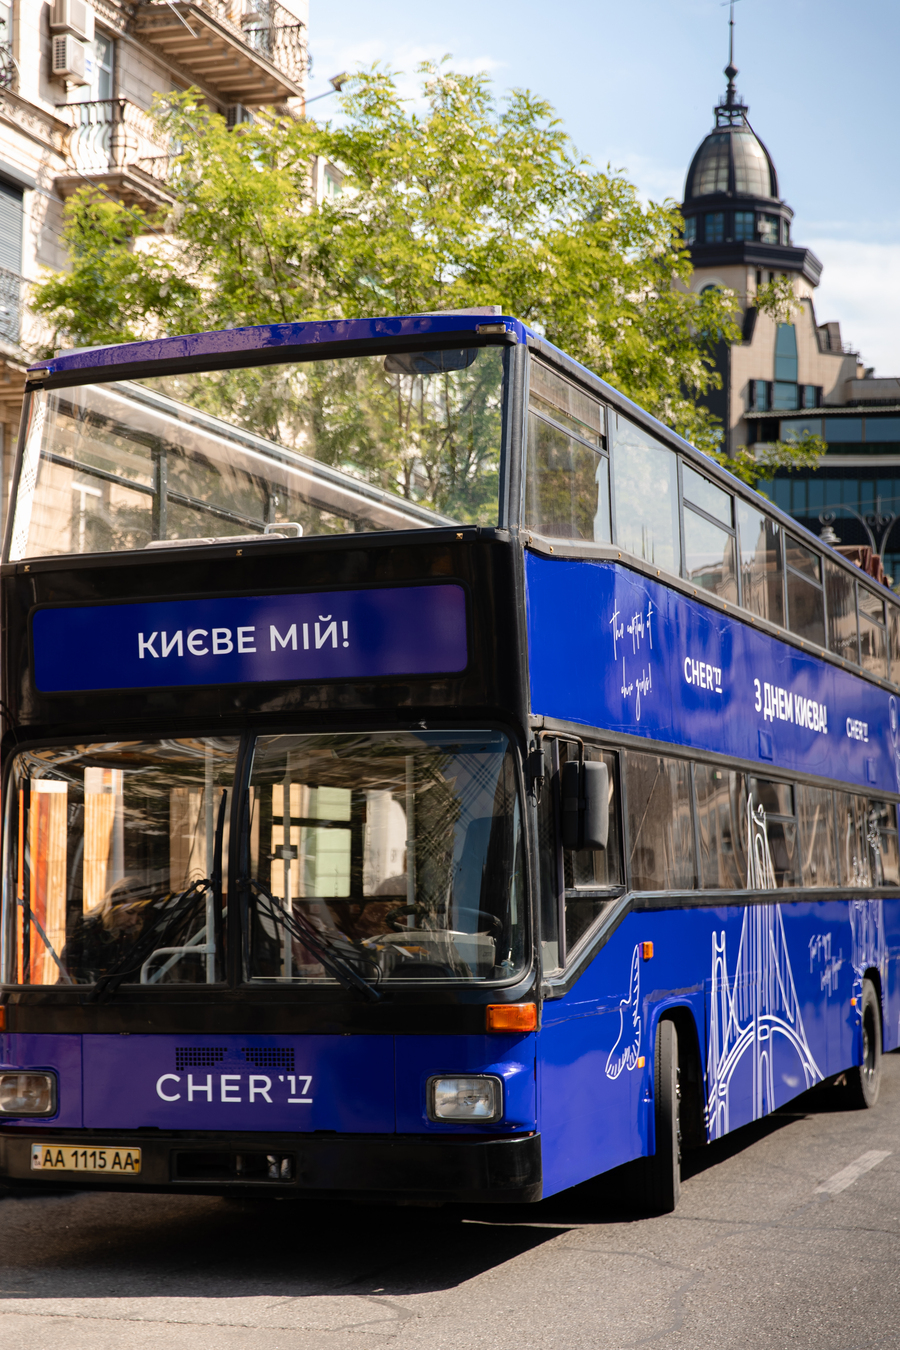 Ко Дню Киева бренд CHER&#8217;17 приглашает на экскурсию по знаковым местам столицы